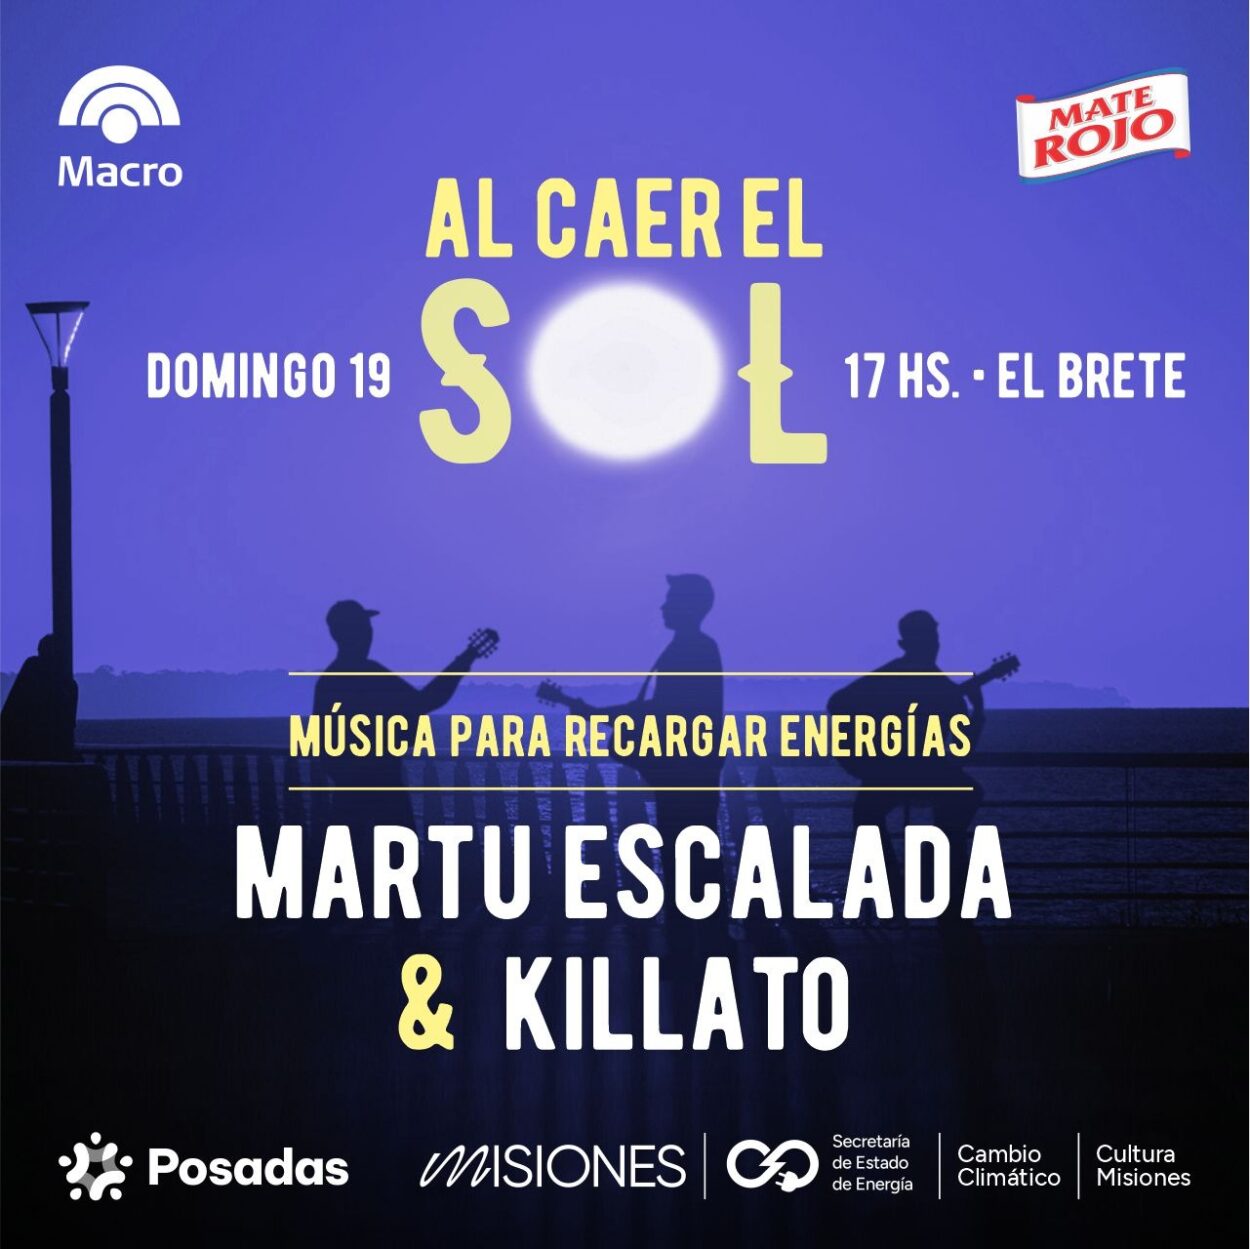 Martu Escalada y Killato: rock y música urbana este domingo “Al caer el sol en El Brete” imagen-12